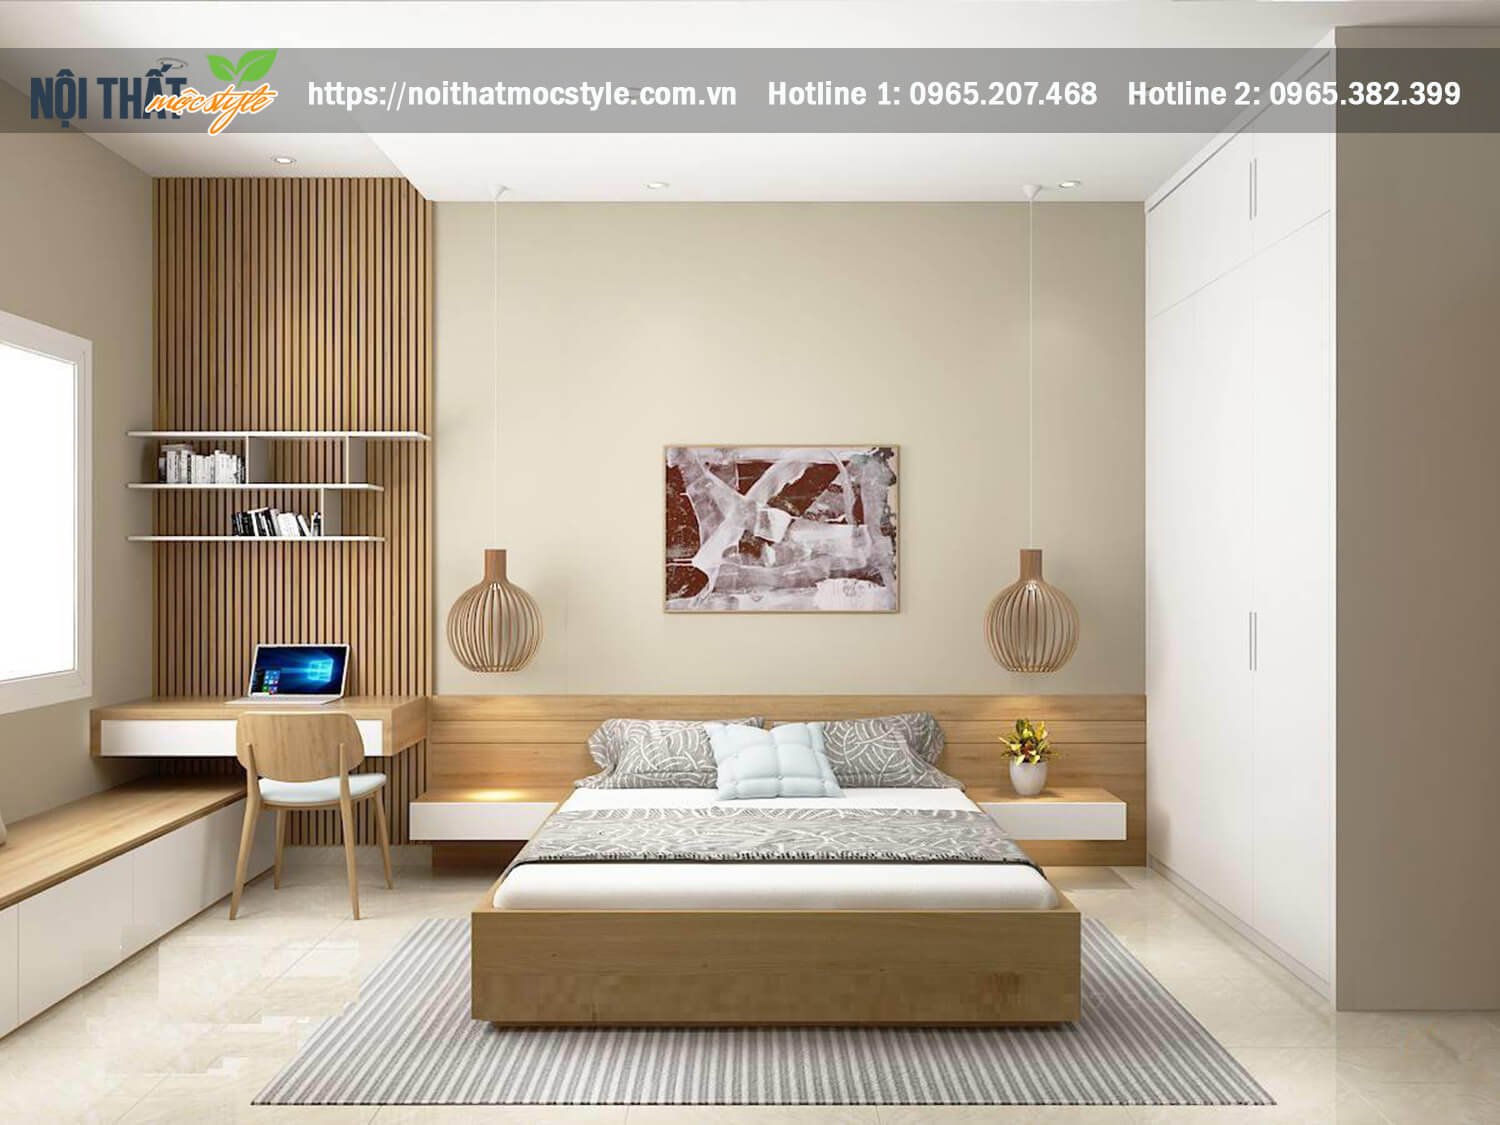 Mẫu thiết kế nội thất đẹp hiện đại với tiêu điểm chính là giường ngủ liền tap đầu giường